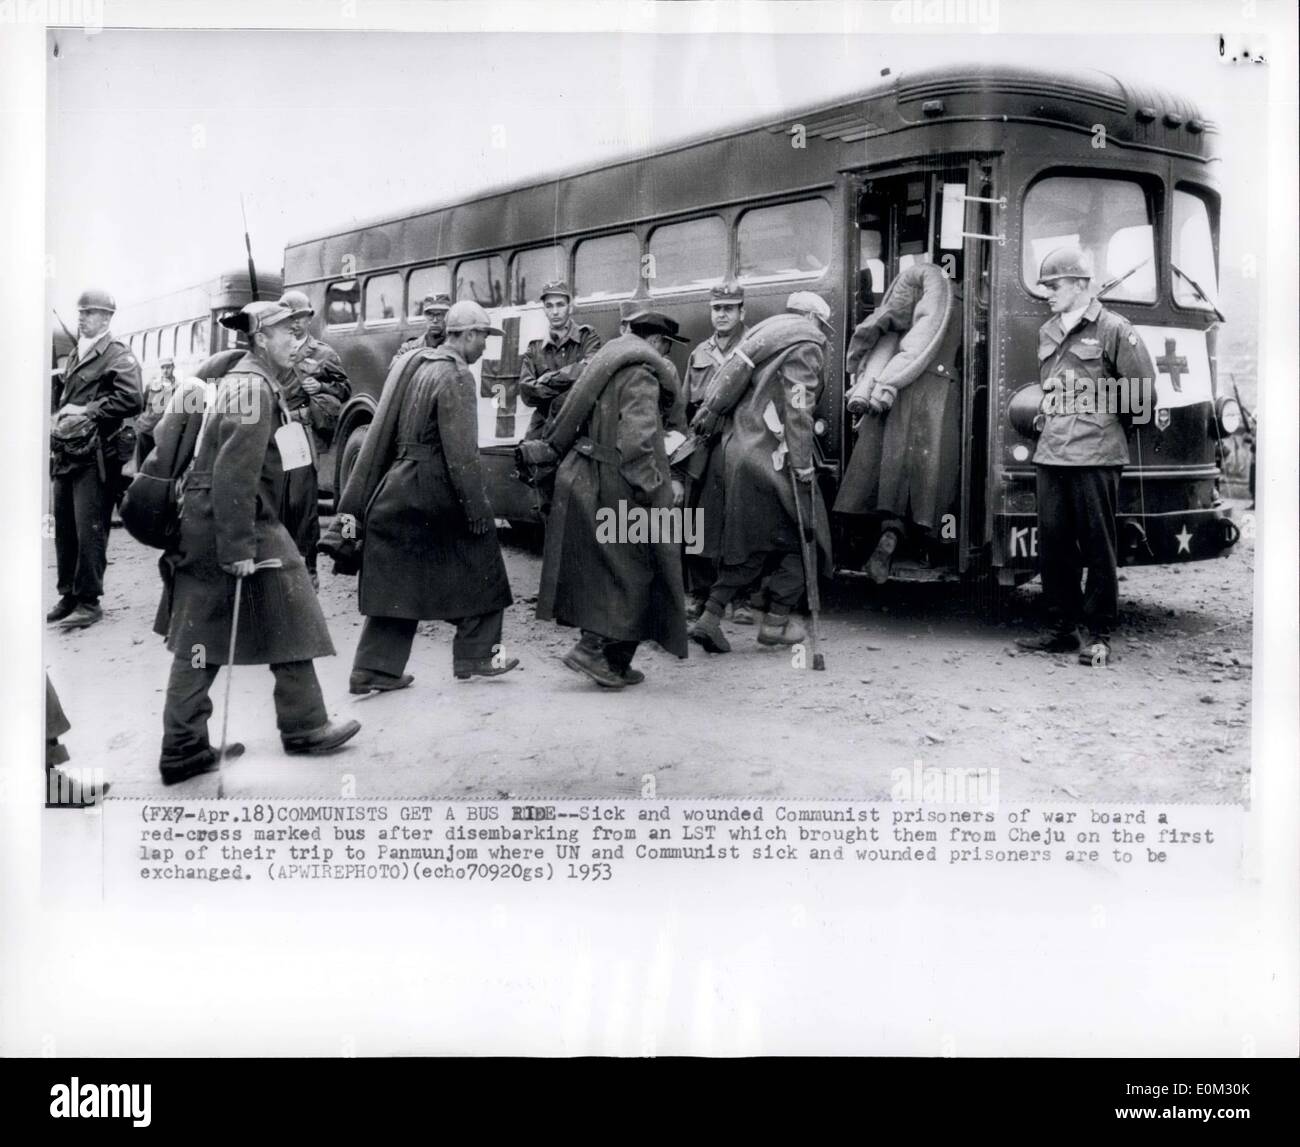 Apr. 18, 1953 - comunisti prendere un autobus: malati e feriti prigionieri comunisti di guerra a bordo di un rosso-cross contrassegnato bus dopo lo sbarco da un LST che li ha portati da Cheju sul primo giro del loro viaggio a Panmunjom dove ONU e la comunista malati e feriti prigionieri sono scambiati. Foto Stock